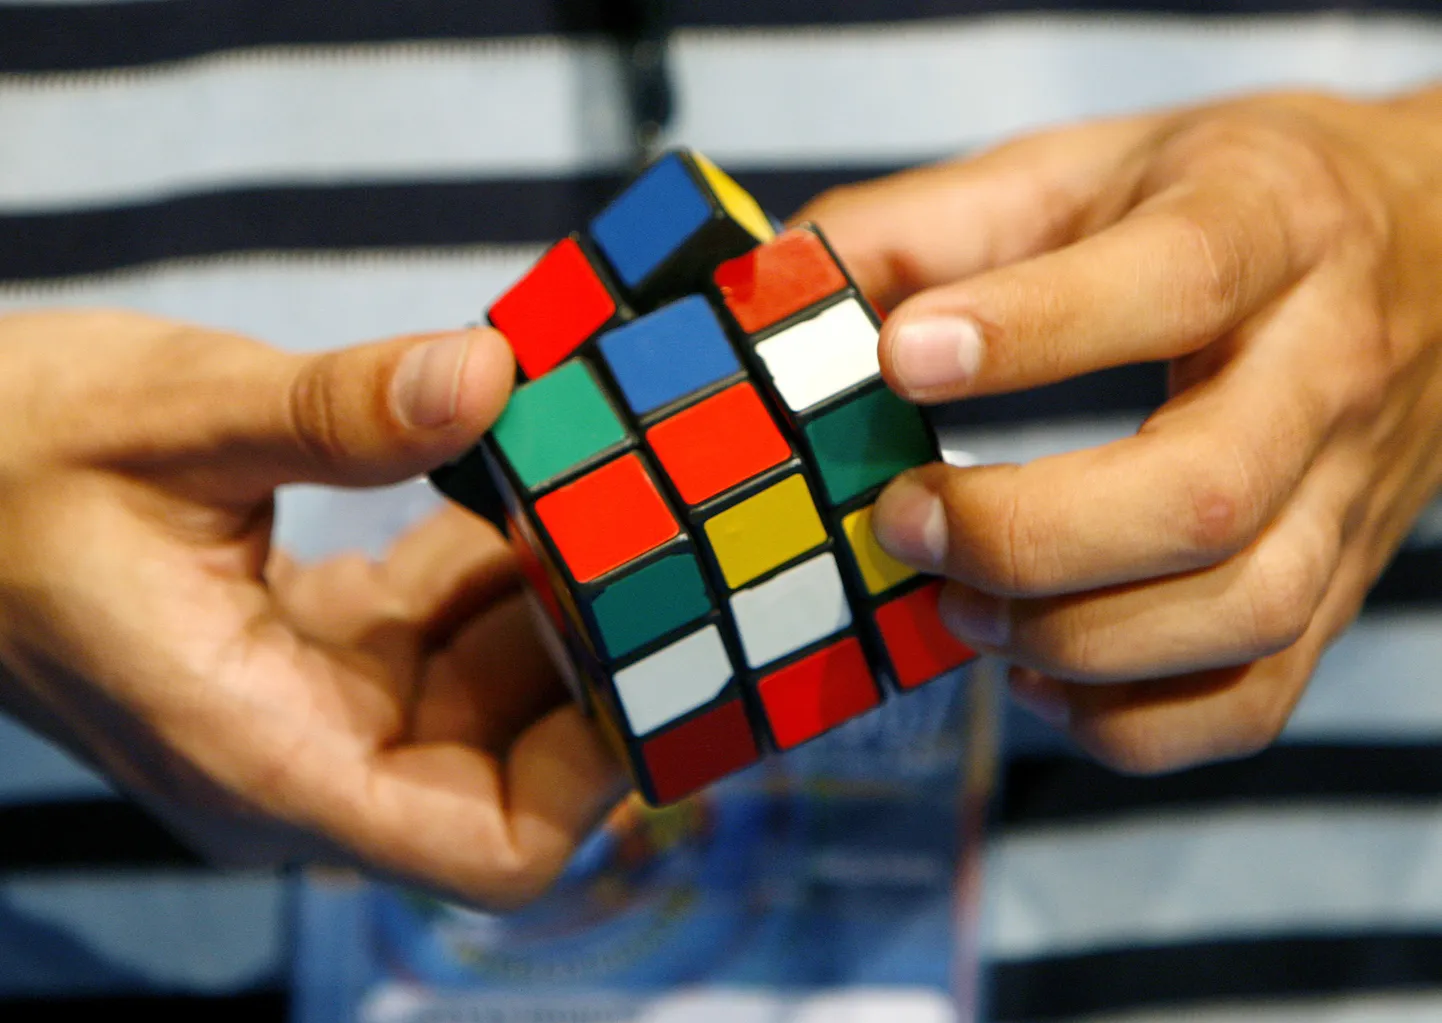 Кубик Рубика - одна из популярнейших в мире головоломок.